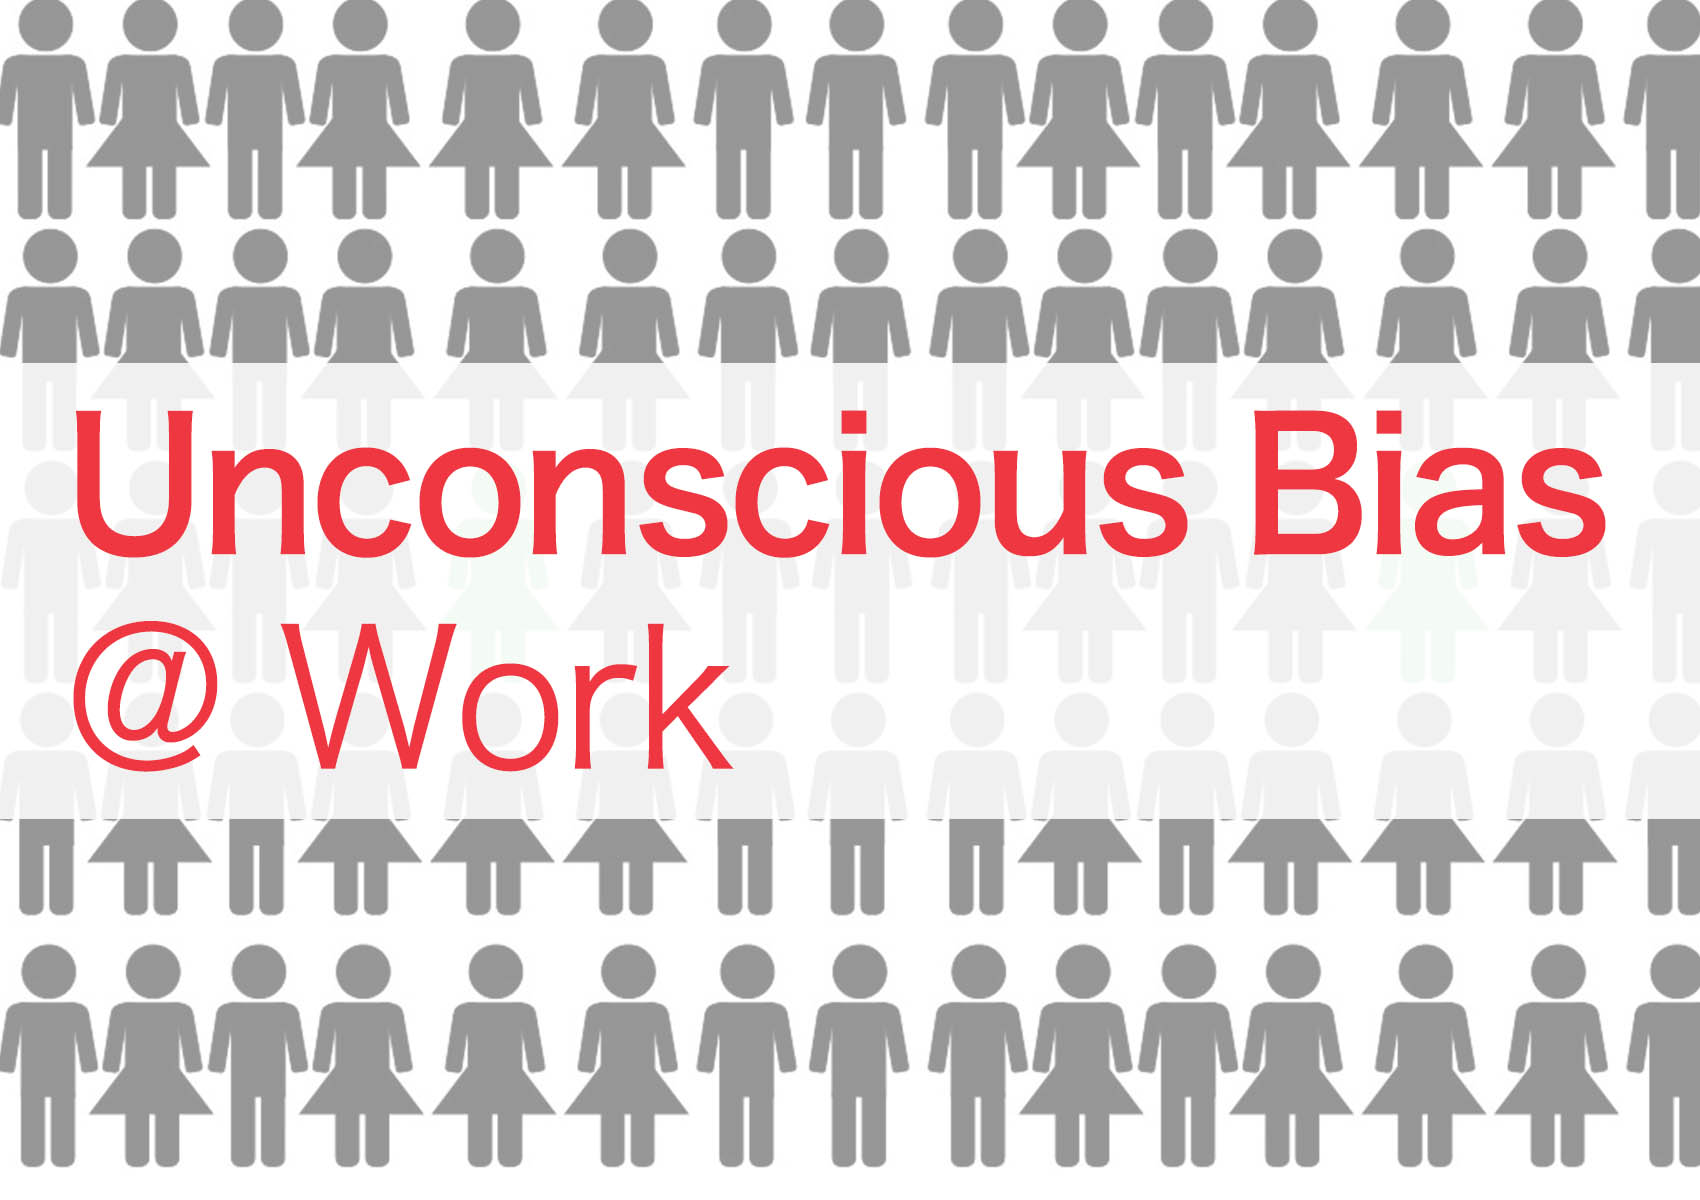 Unconscious Bias @ Work, Part 2